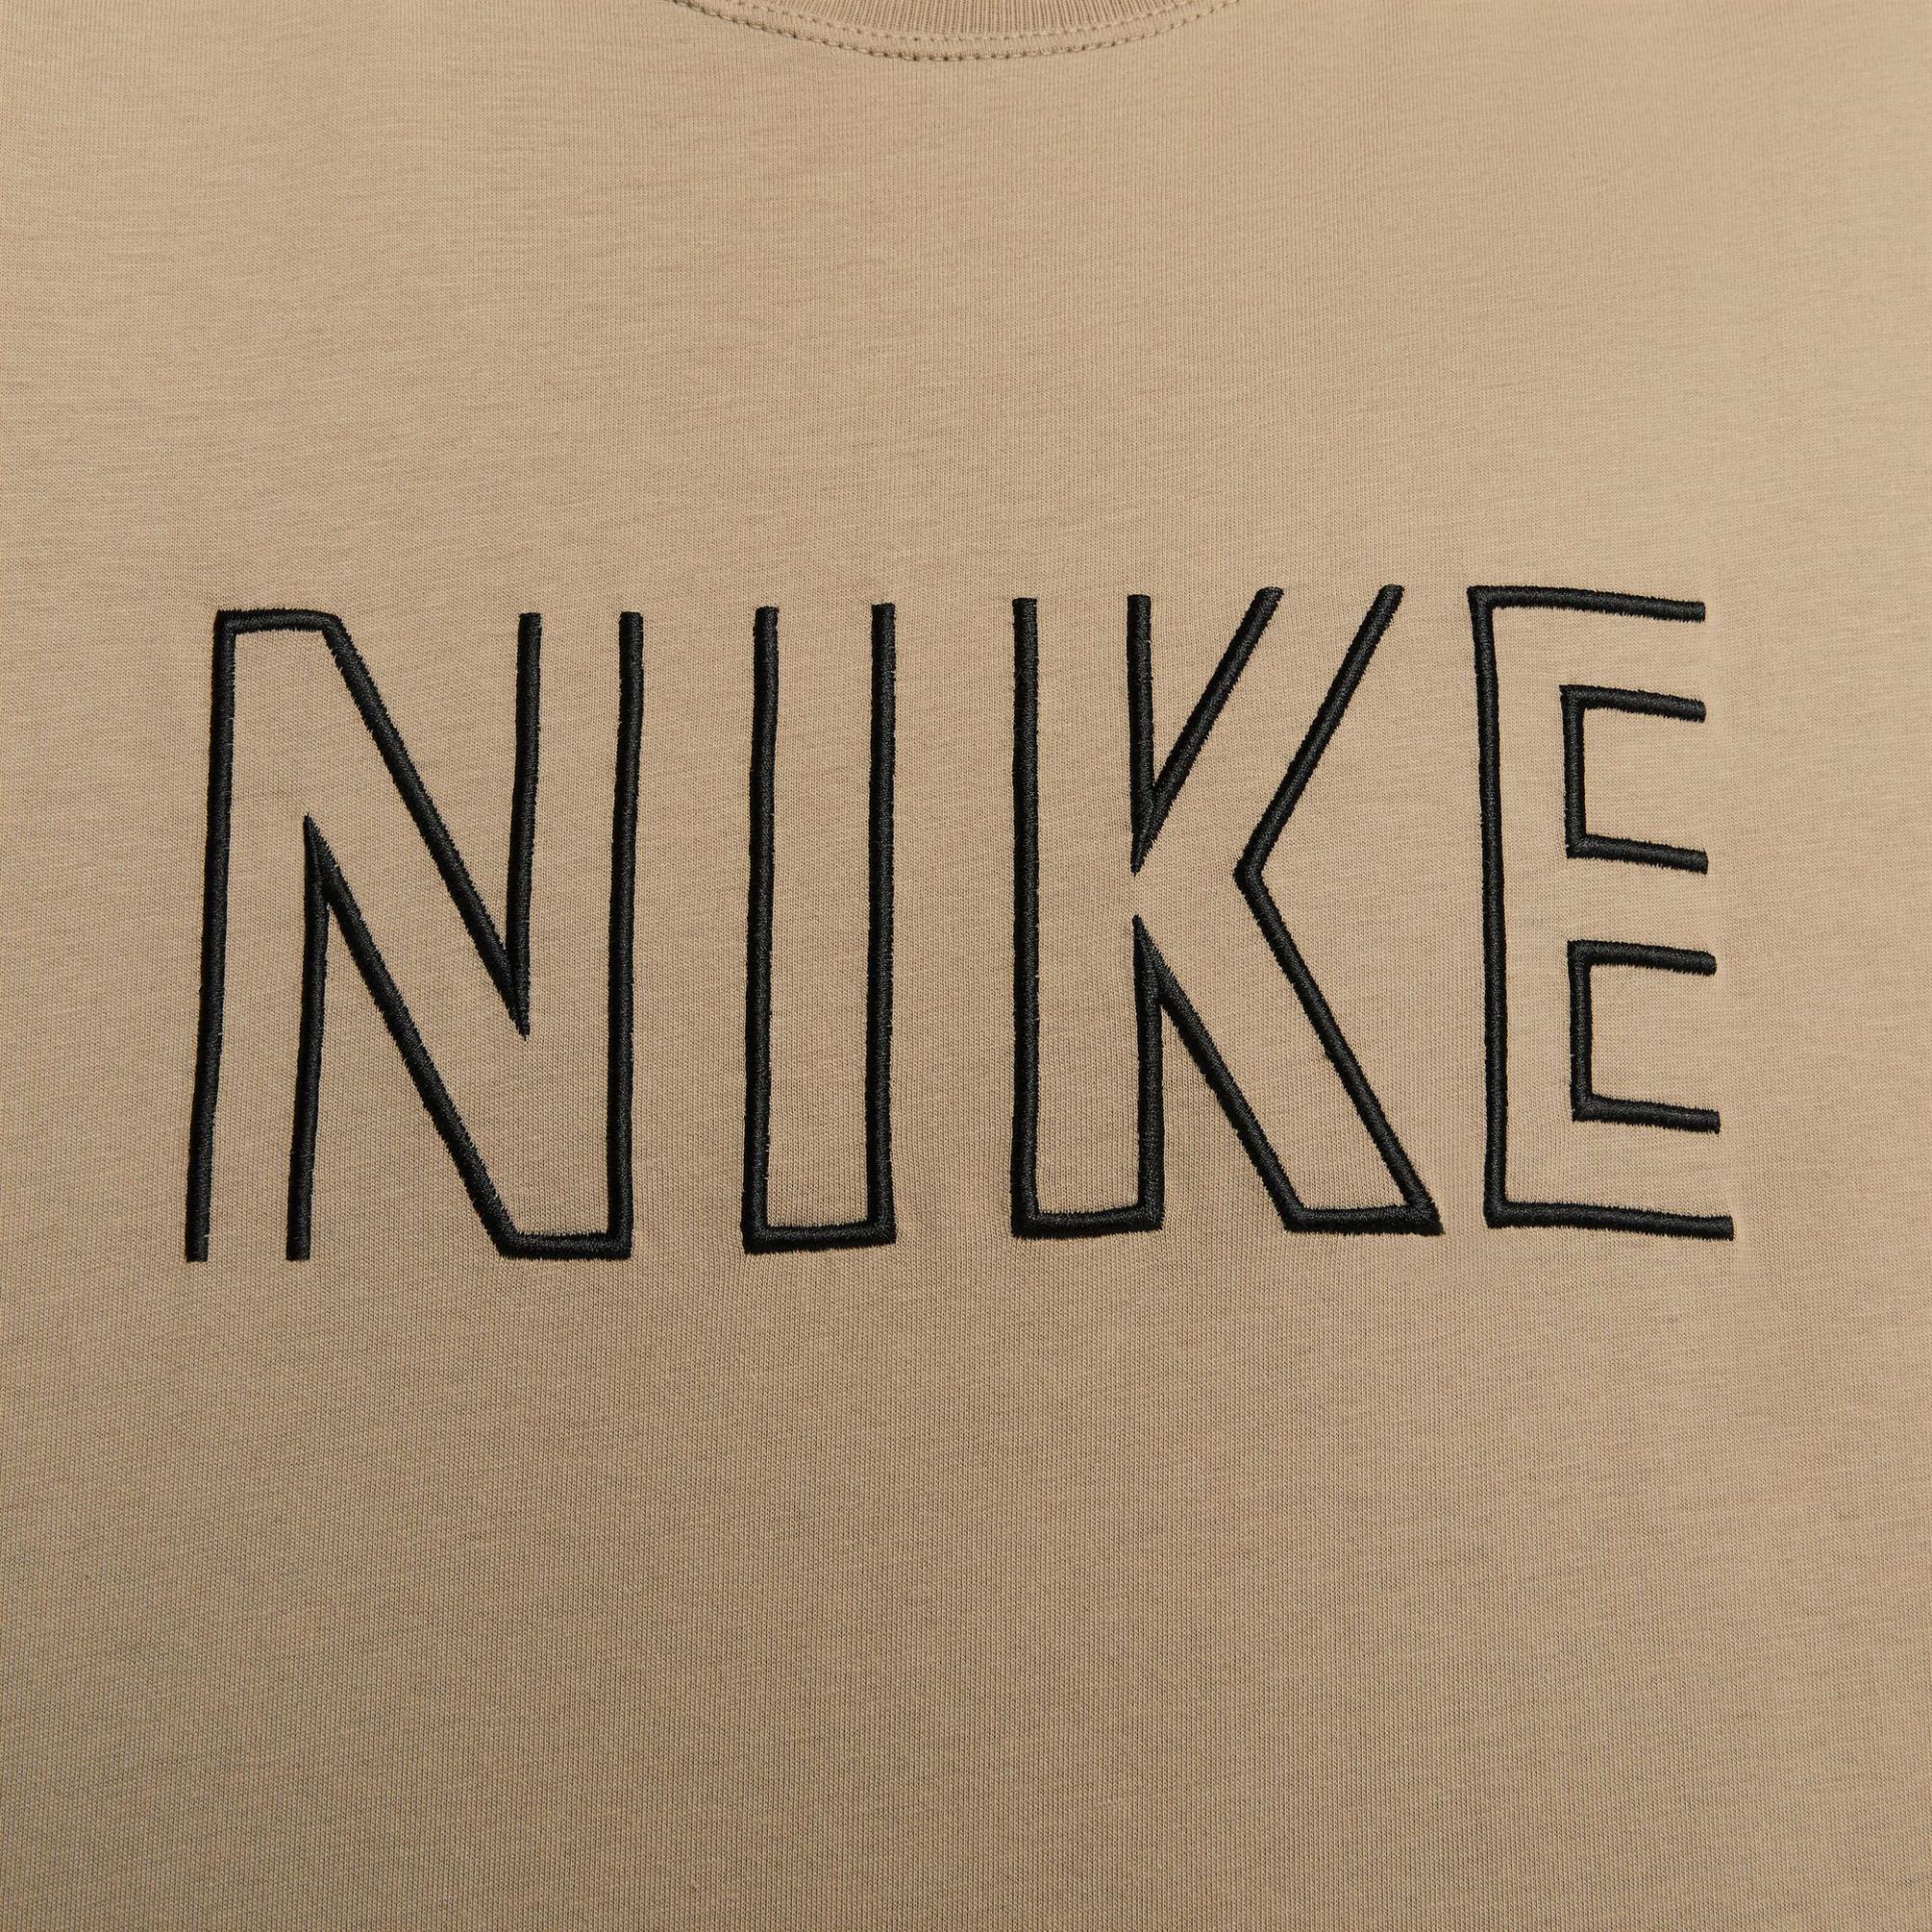  Nike Sportswear Kadın Kahverengi T-Shirt